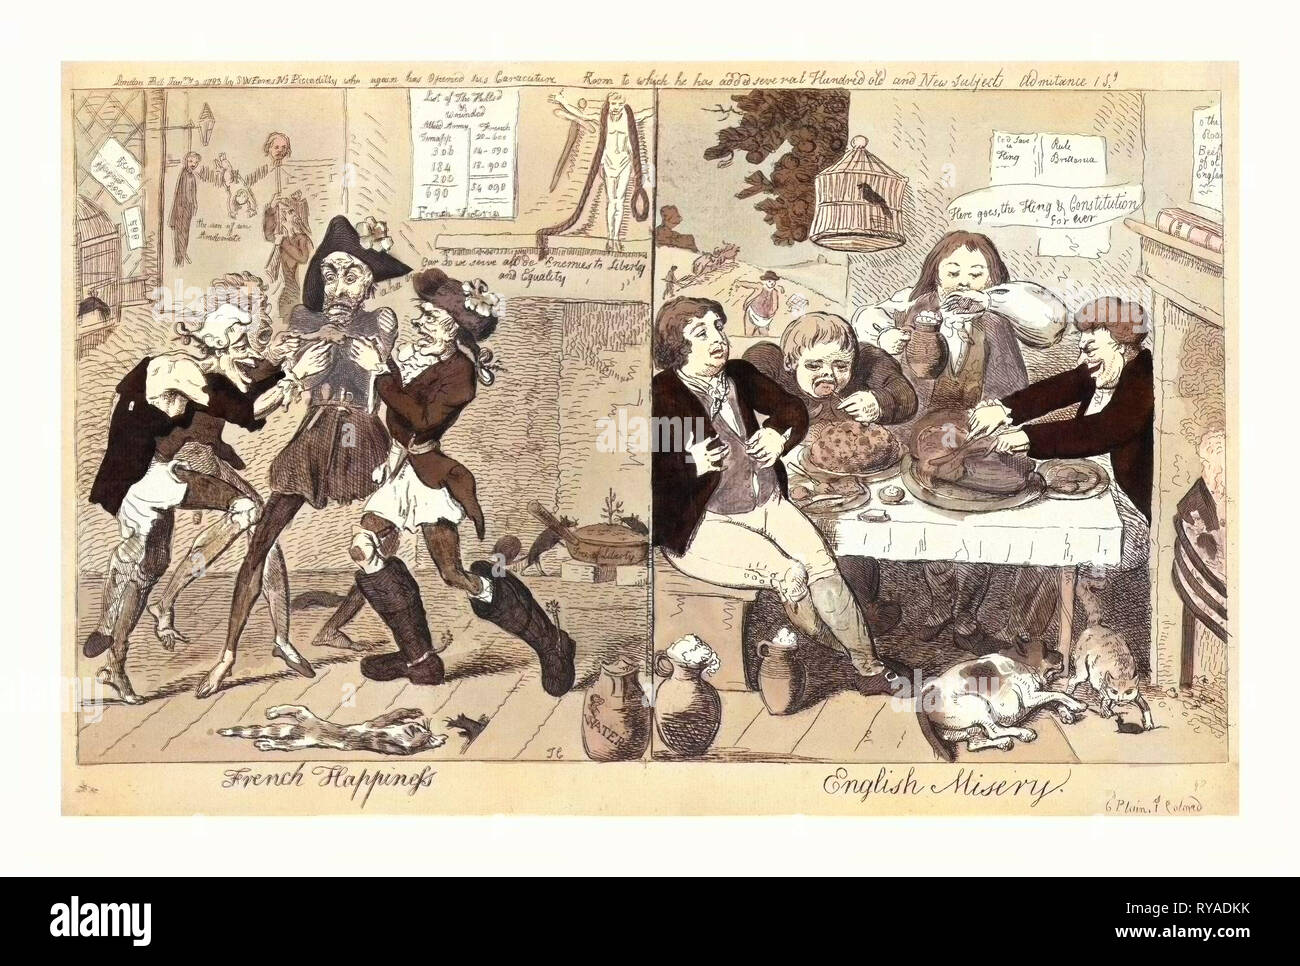 Le bonheur Français English La misère, Cruikshank, Isaac, 1756 ?-1811 ?, gravure 1793, sur la gauche, quatre irrégulières et de faim sans-culottes qui se battent pour une grenouille, un chat est tombé mort à leurs pieds, et des scènes de la mort dans l'arrière-plan, sur la droite, une scène dans une taverne avec une table chargée de nourriture et quatre hommes de trop manger, un gros chien se trouve sur le sol, et un chat a attrapé une souris Banque D'Images